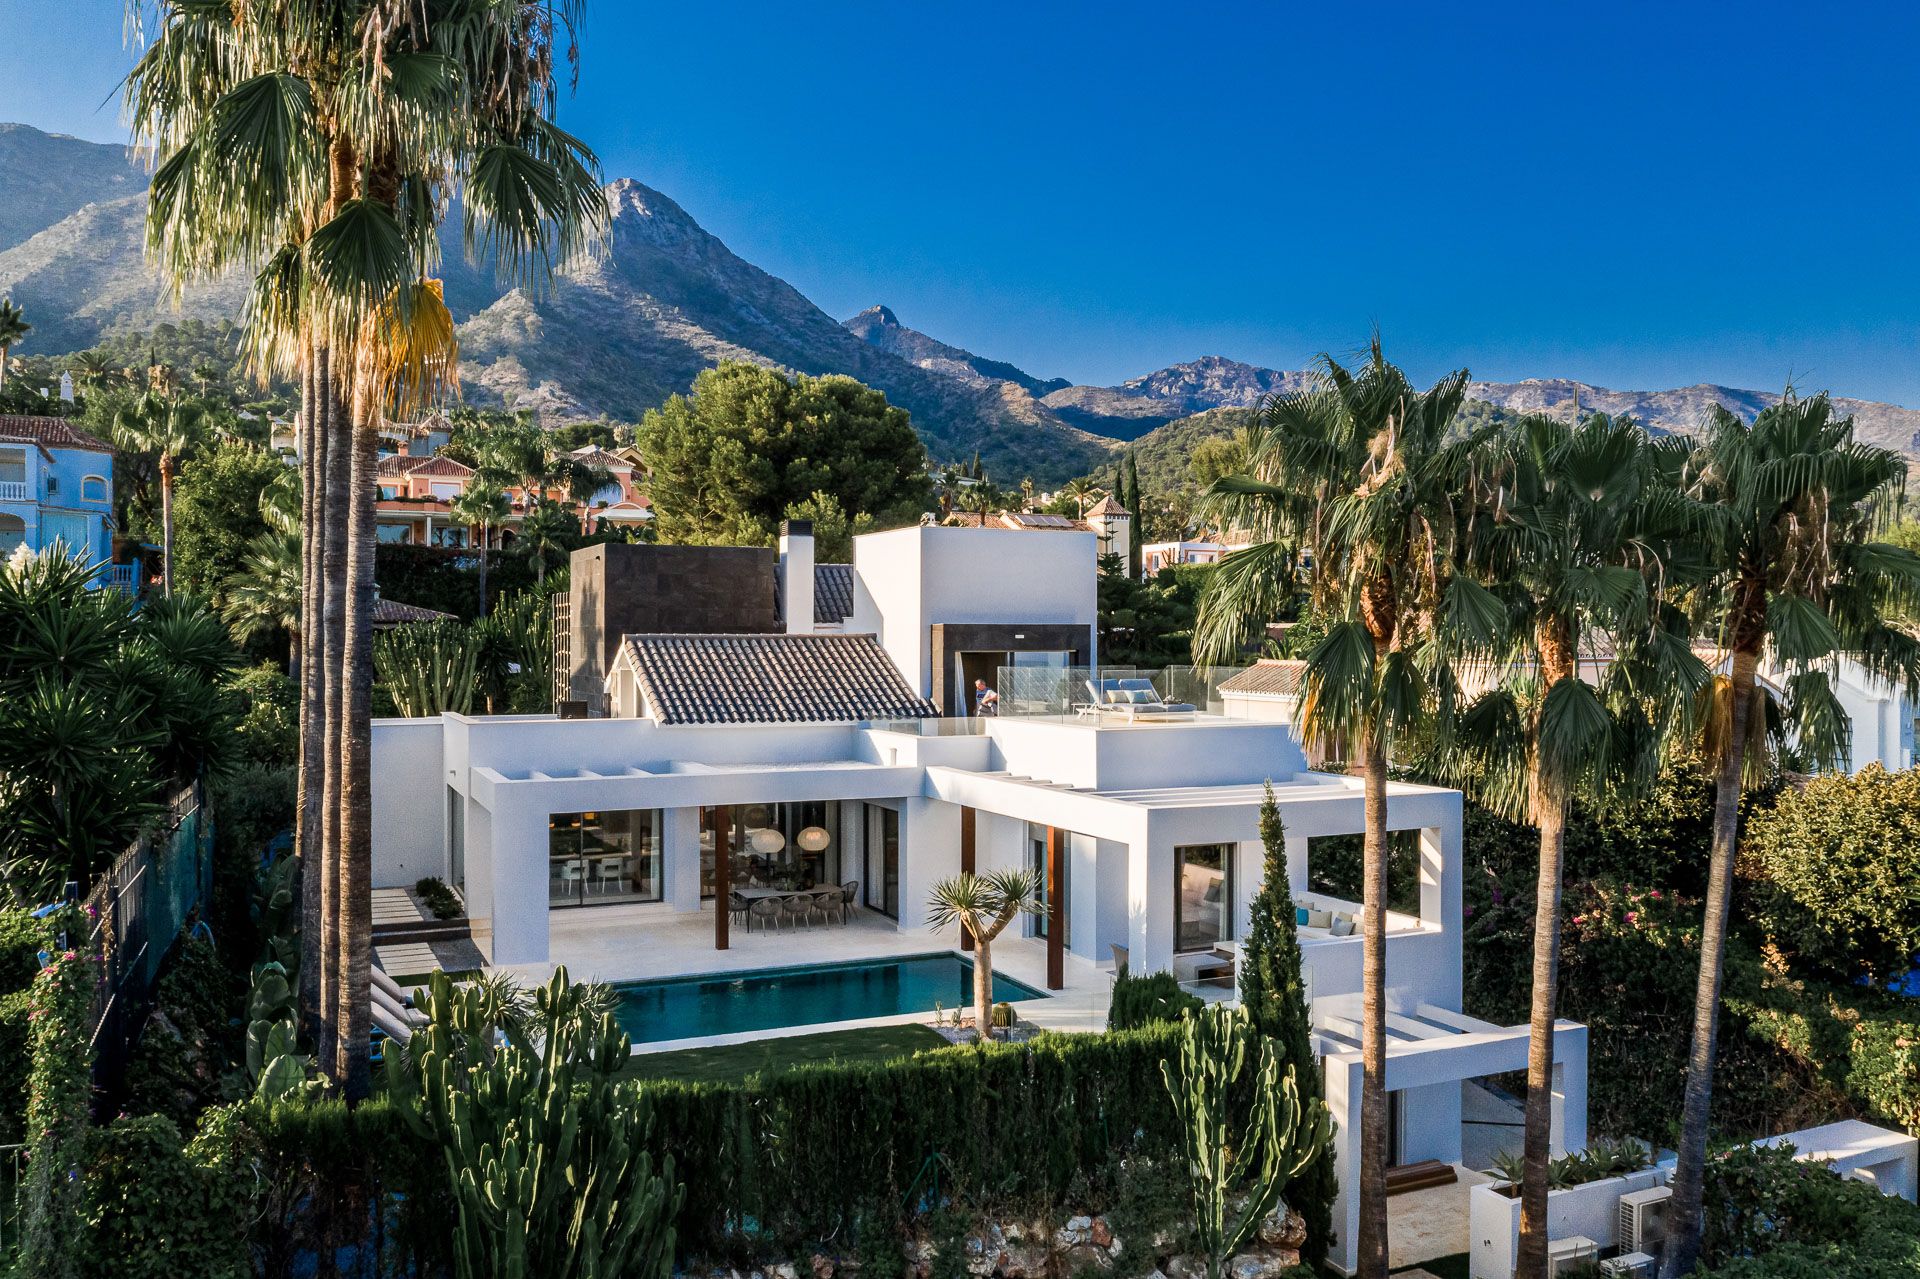 Villa de Diseño Contemporáneo en Sierra Blanca | Engel & Völkers Marbella